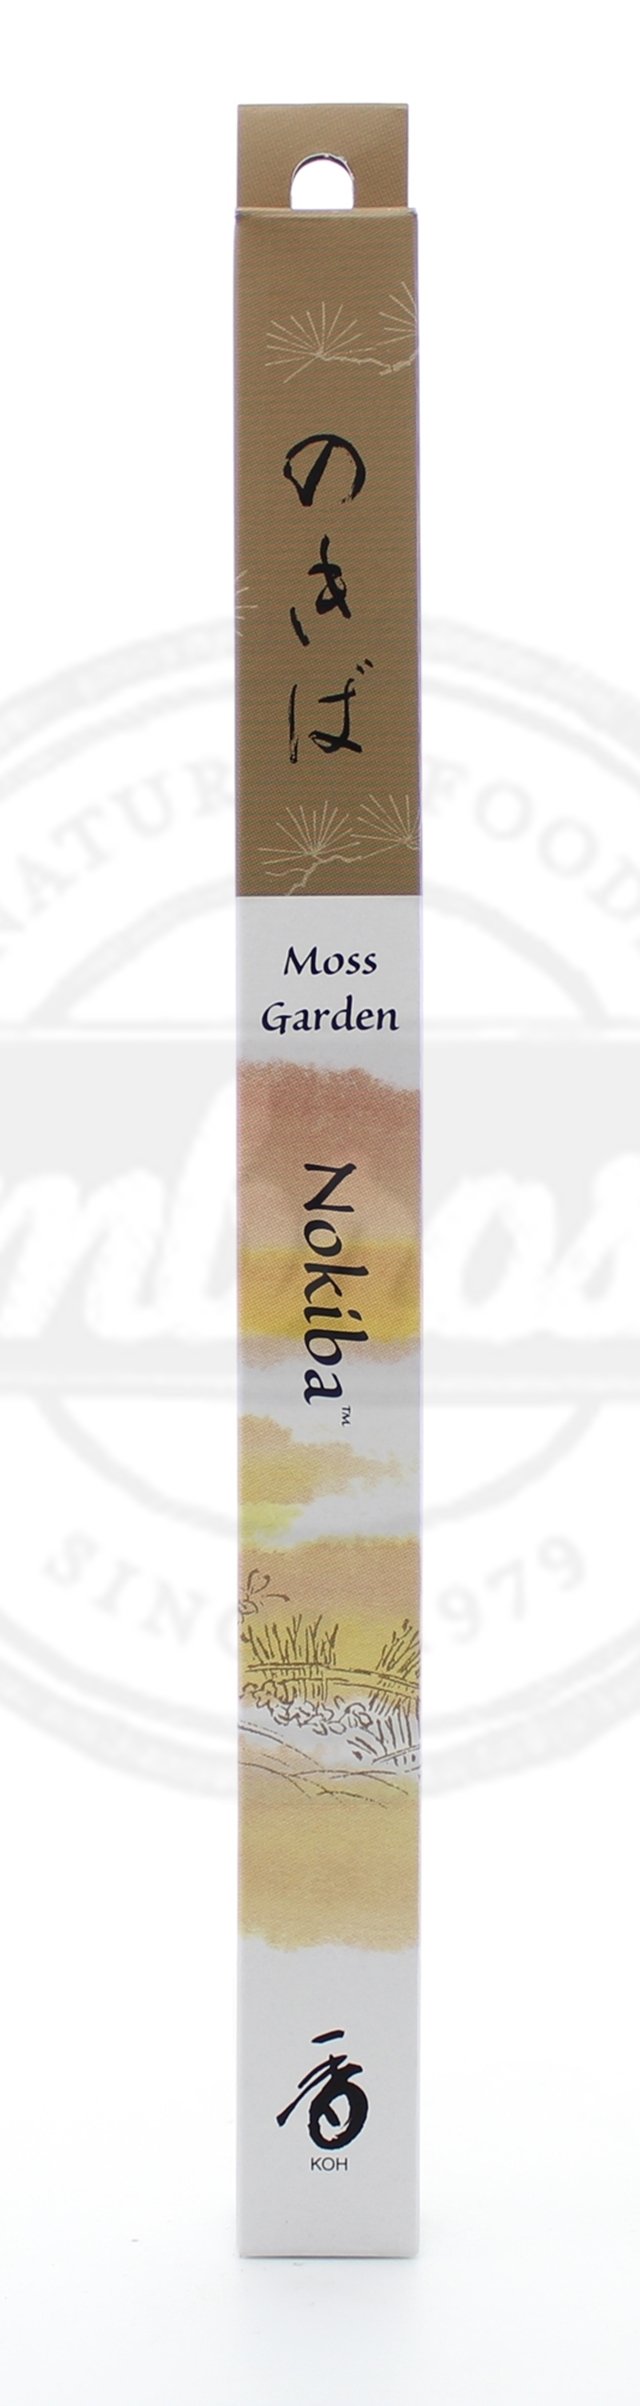 Moss Garden Nokiba Incense